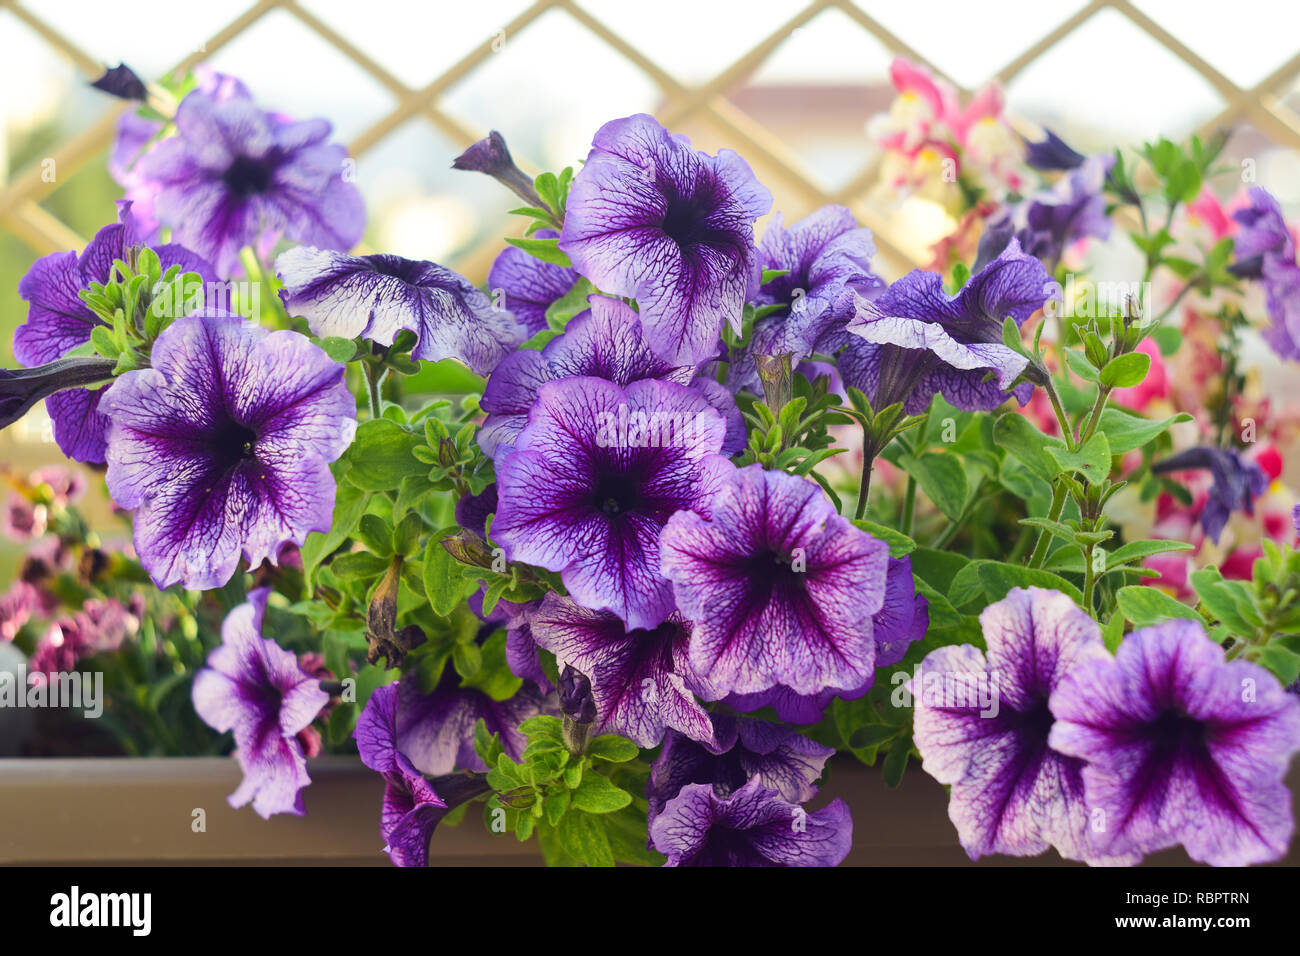 Petunia hybrida (Petunia) purple flowers Stock Photo